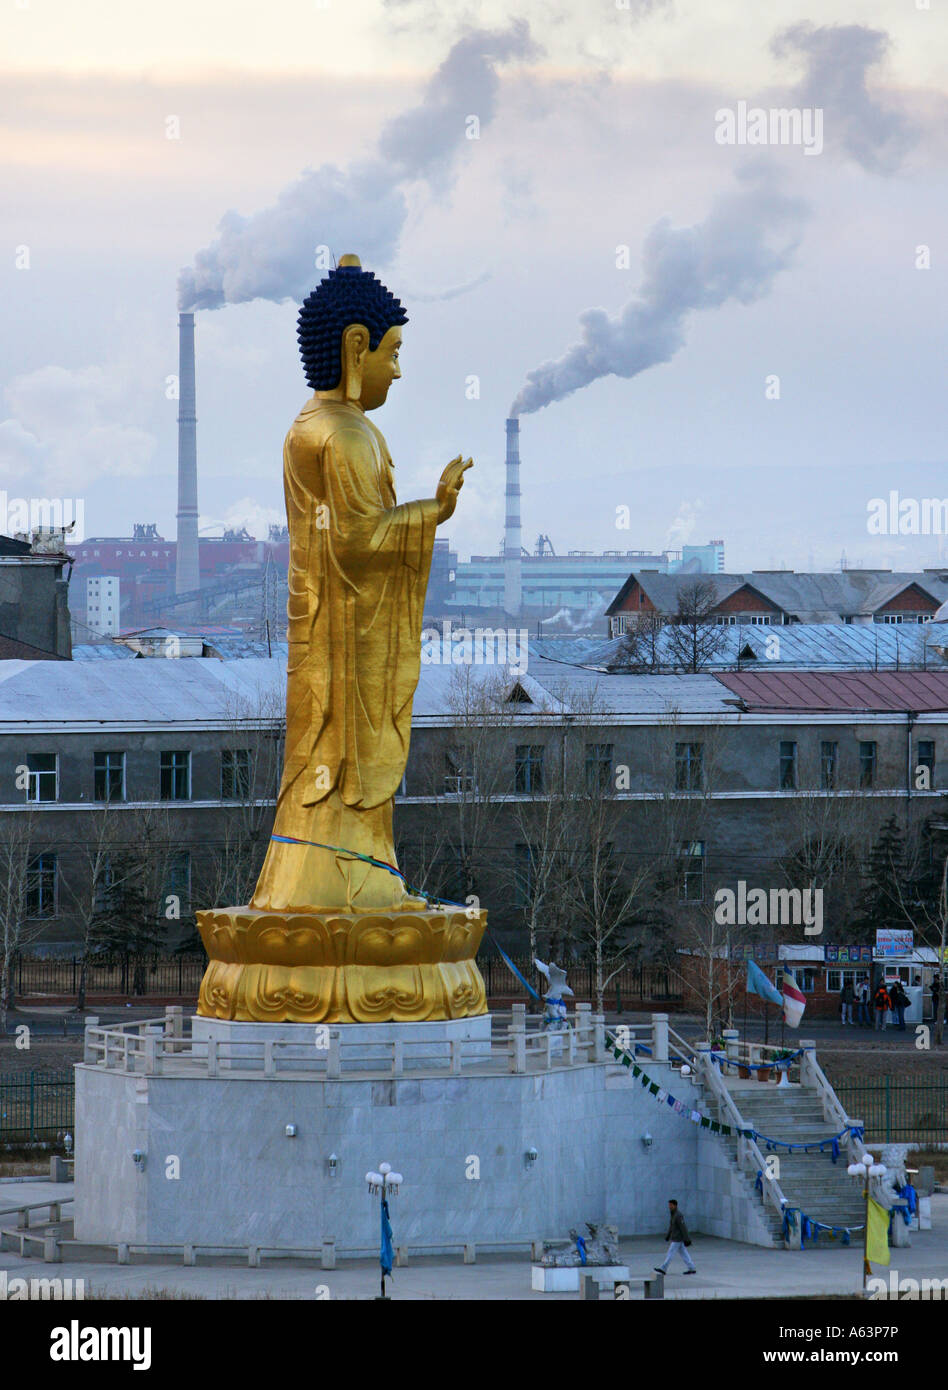 Mongolie - statue de Bouddha dans la capitale dans le contexte de production combinée de chaleur et d'électricité de la ville d'Oulan Bator Banque D'Images